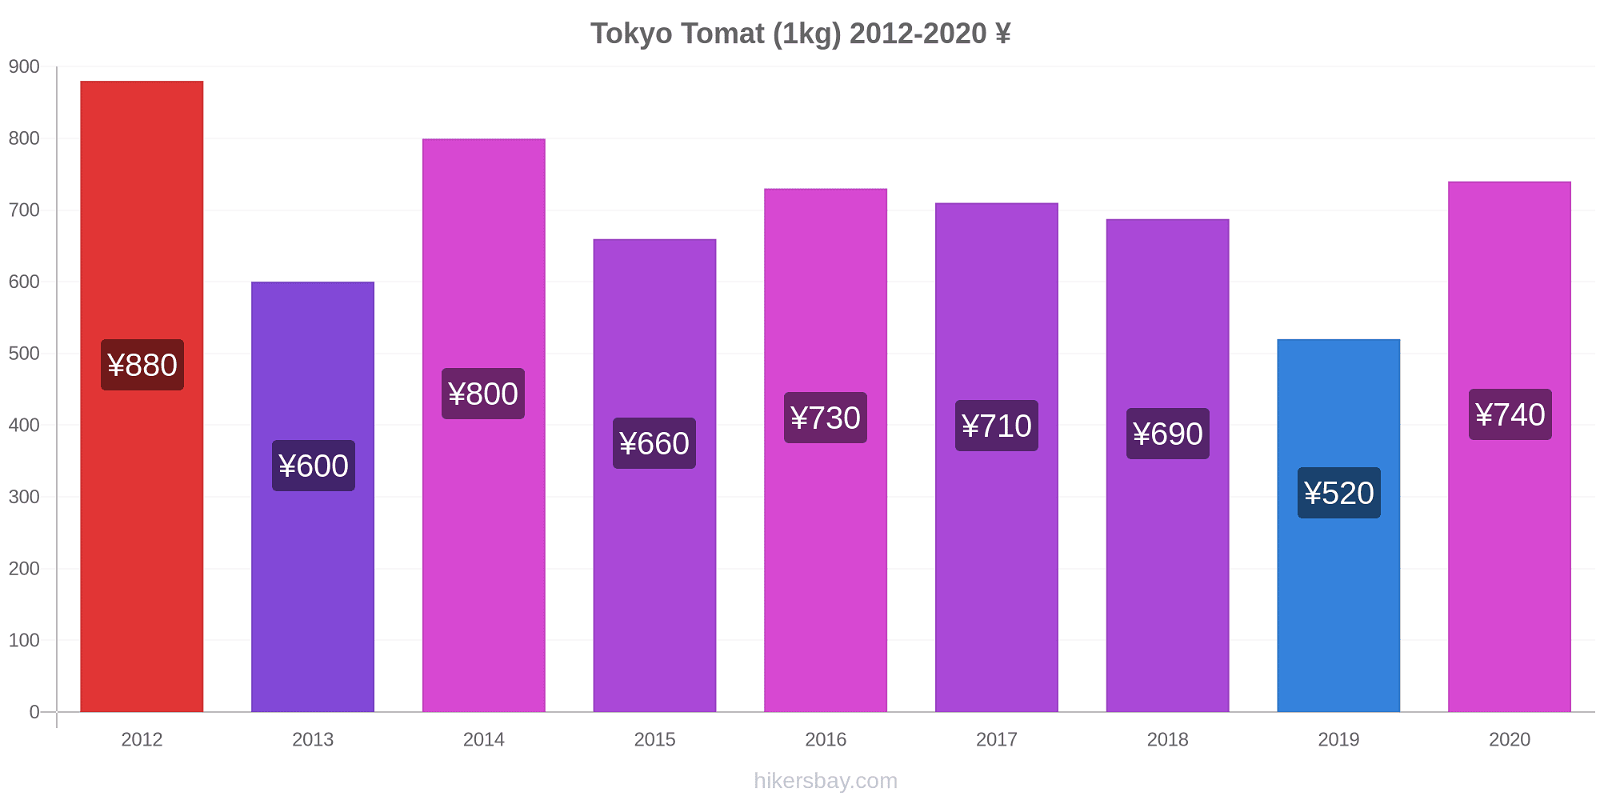 Tokyo prisförändringar Tomat (1kg) hikersbay.com